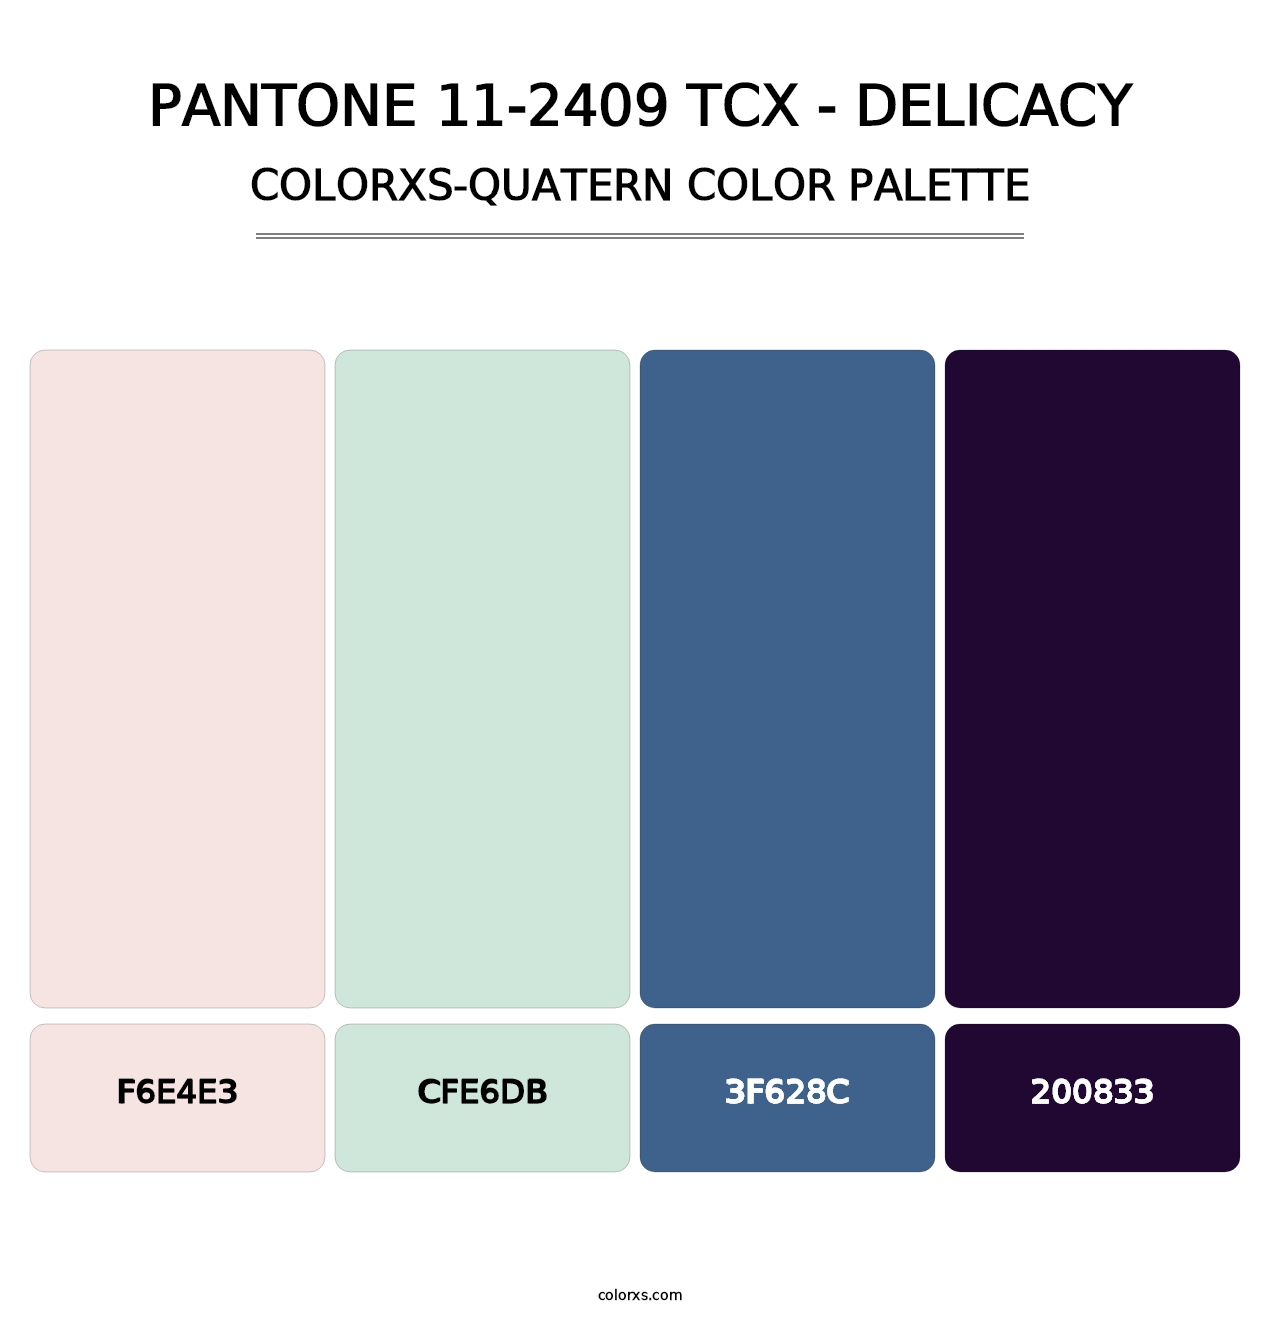 PANTONE 11-2409 TCX - Delicacy - Colorxs Quatern Palette